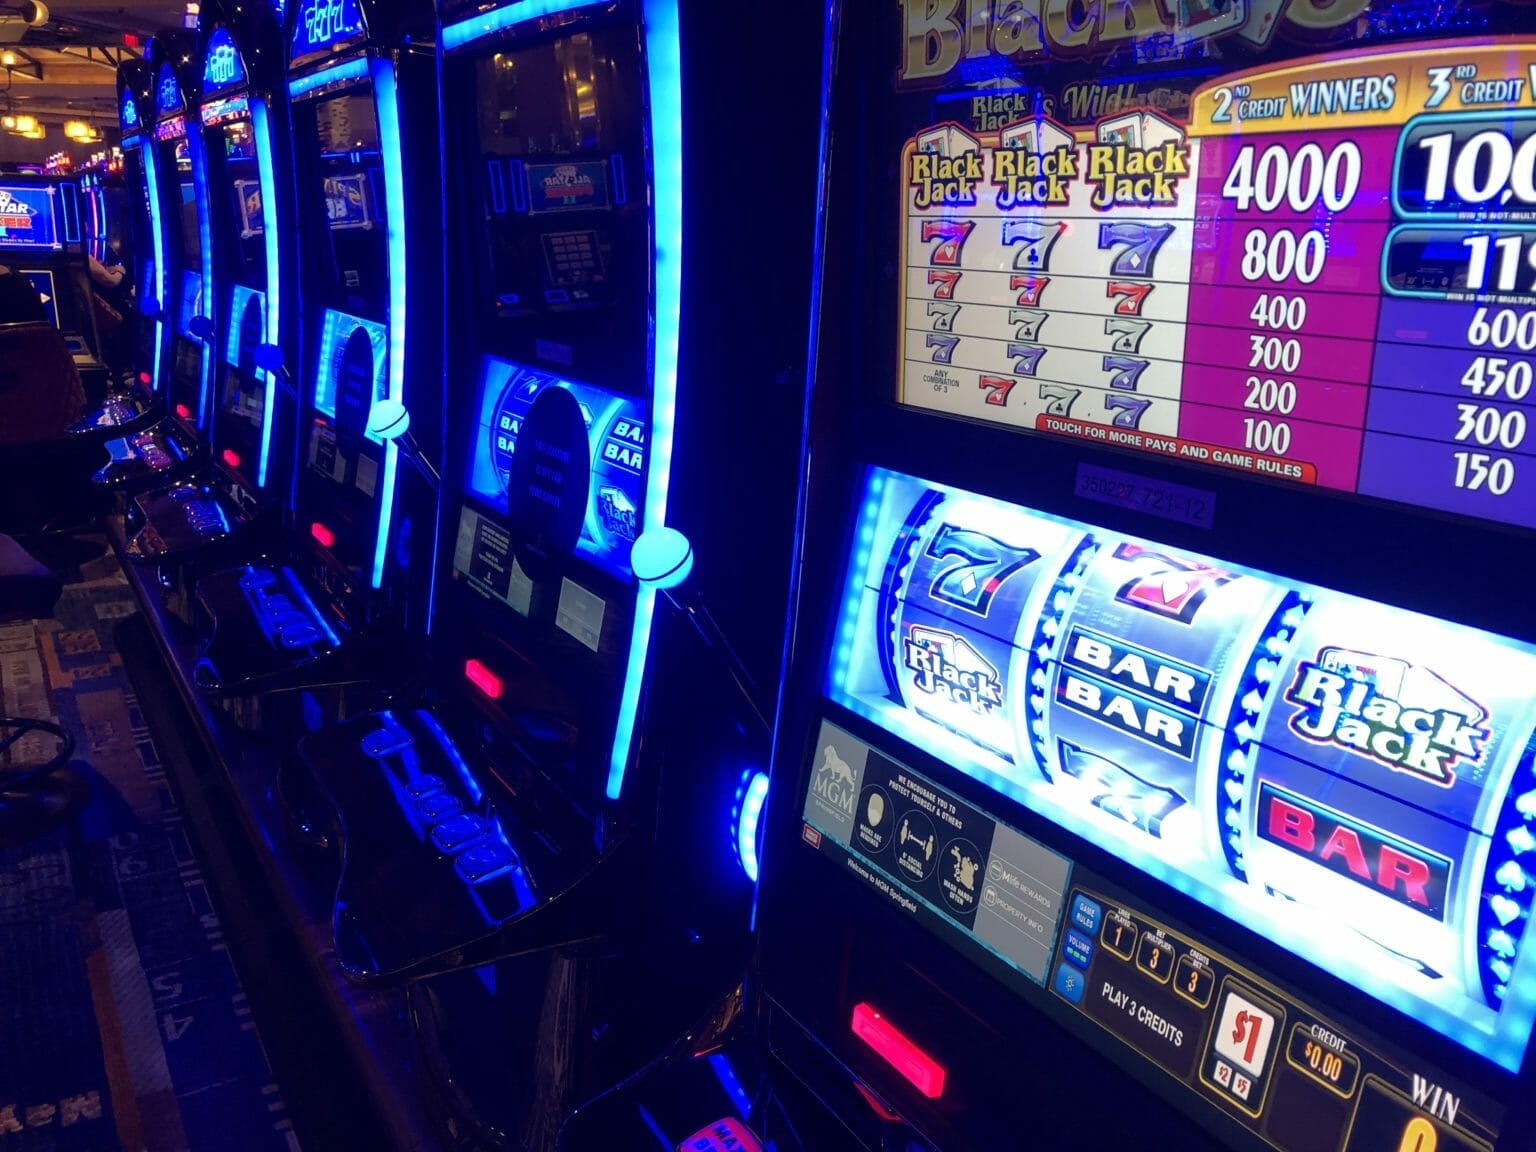 777 slots at mgm springfield casino